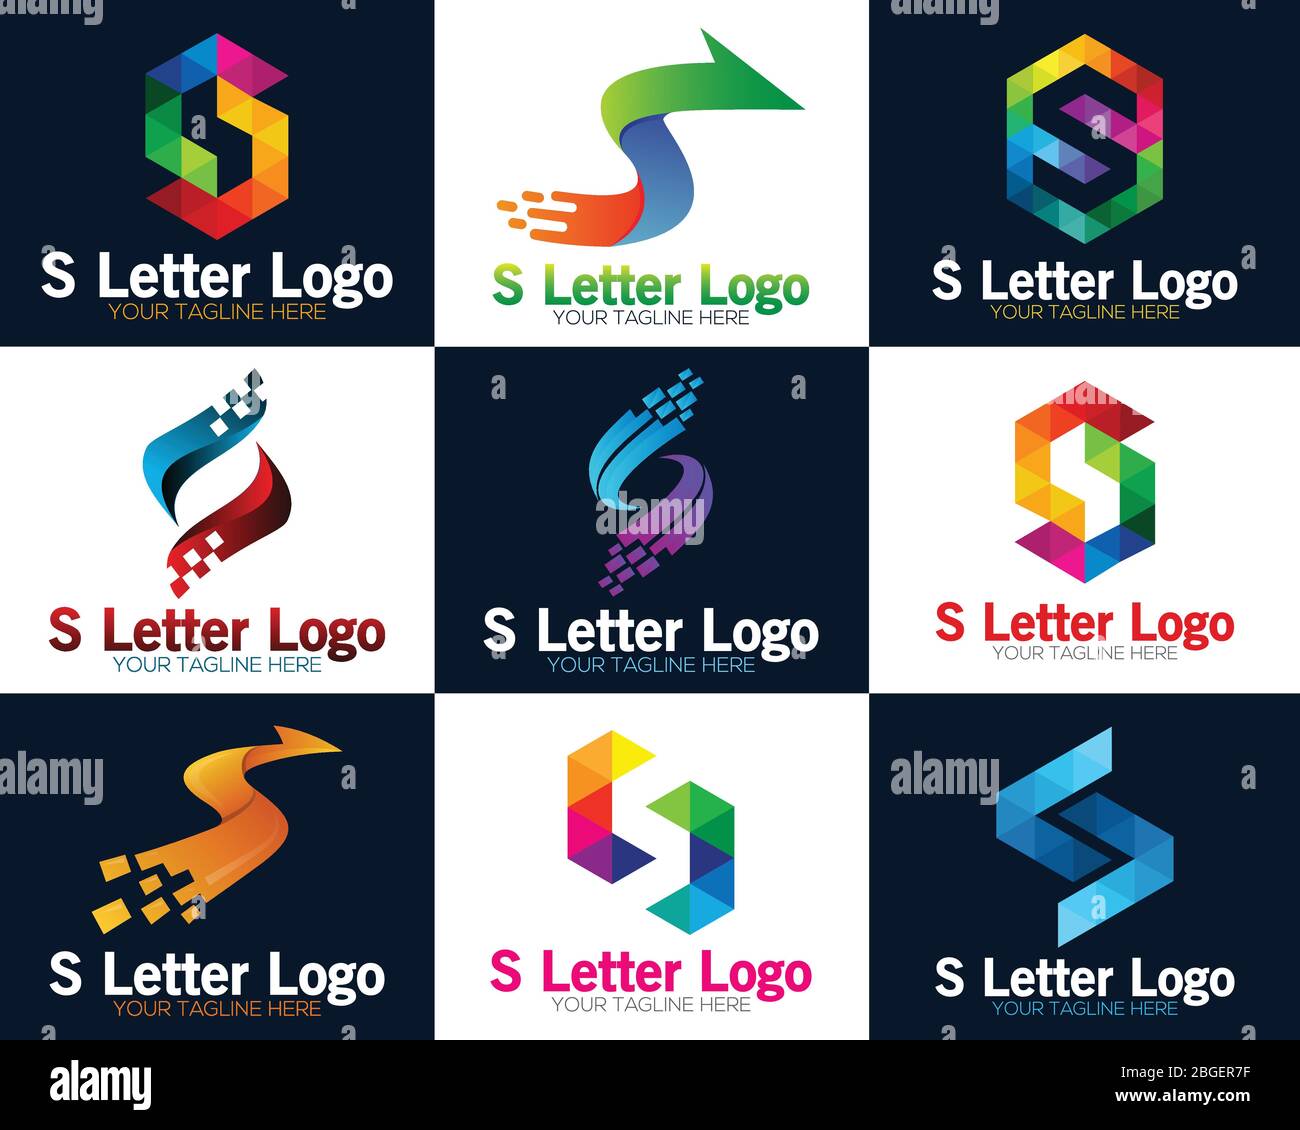 Pixel art design of the S letter logo. S Letter Pixel Multiply Colorful Logo Design Template. Letter S logo for technology. Stock Vector